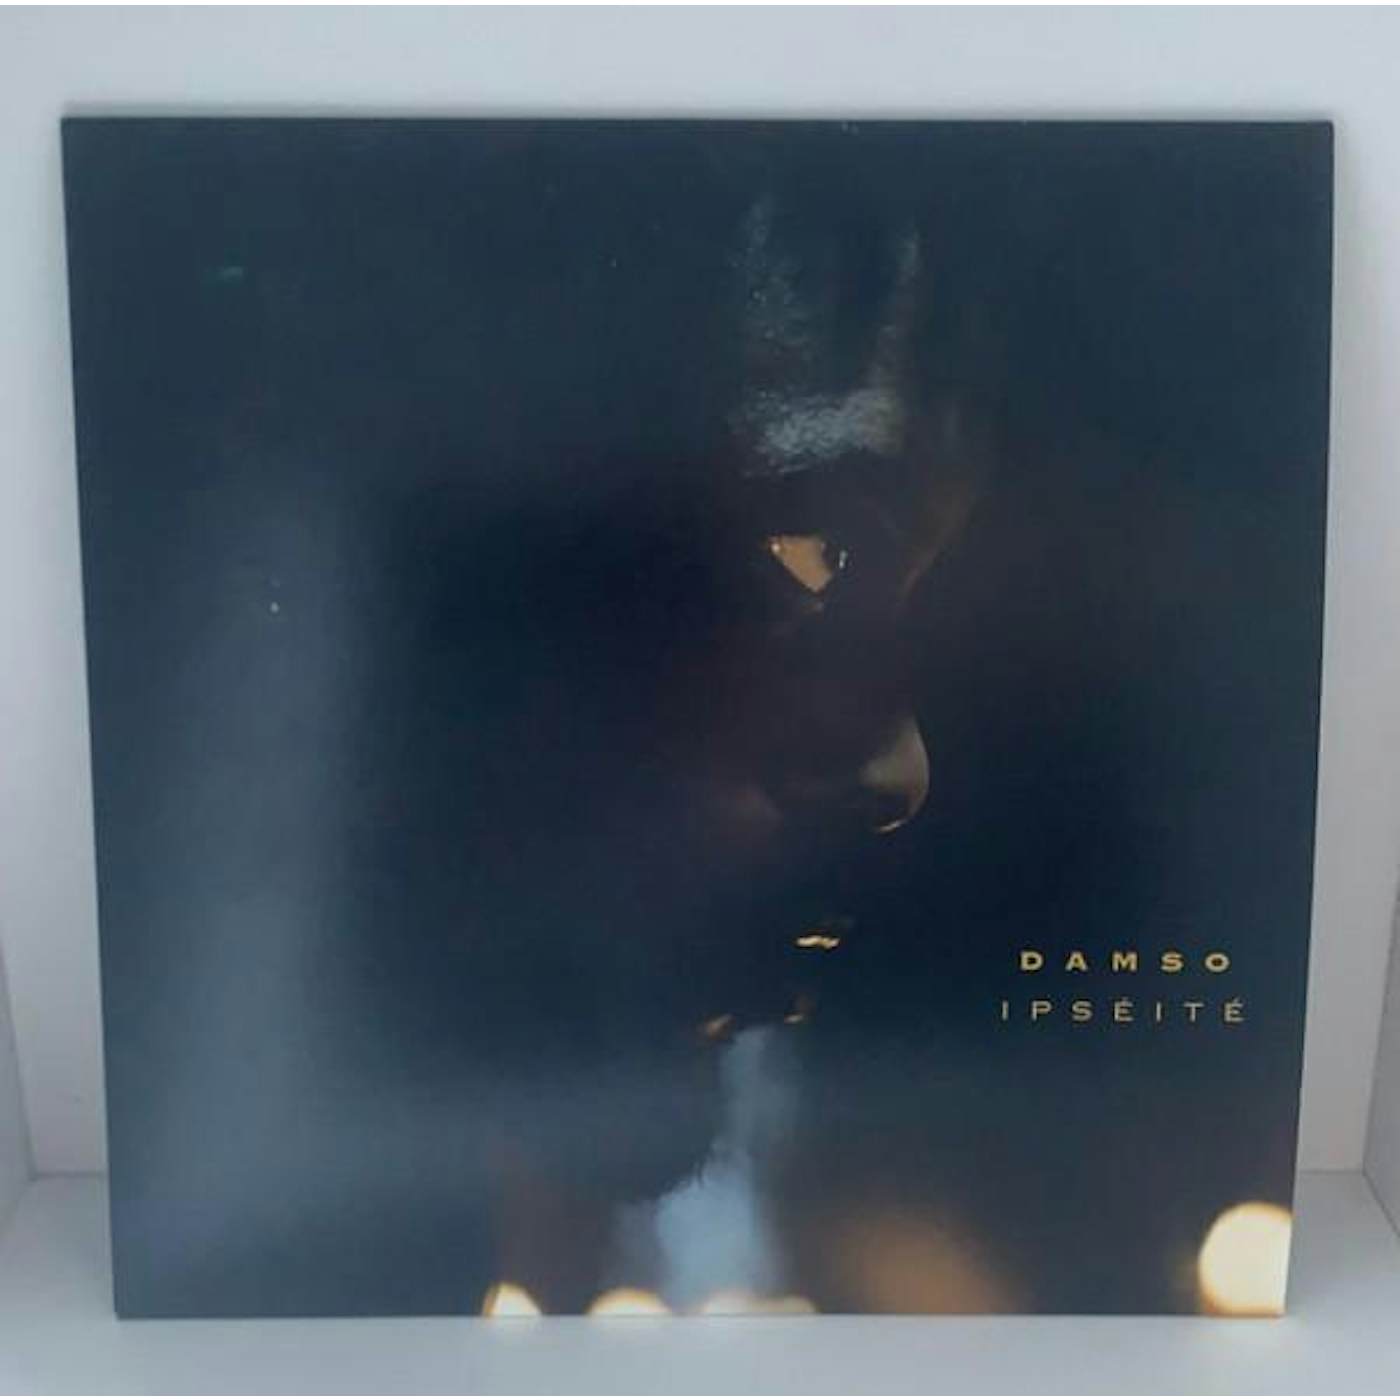 Damso - Ipseite - new vinyl – PHONOPOLIS Montreal